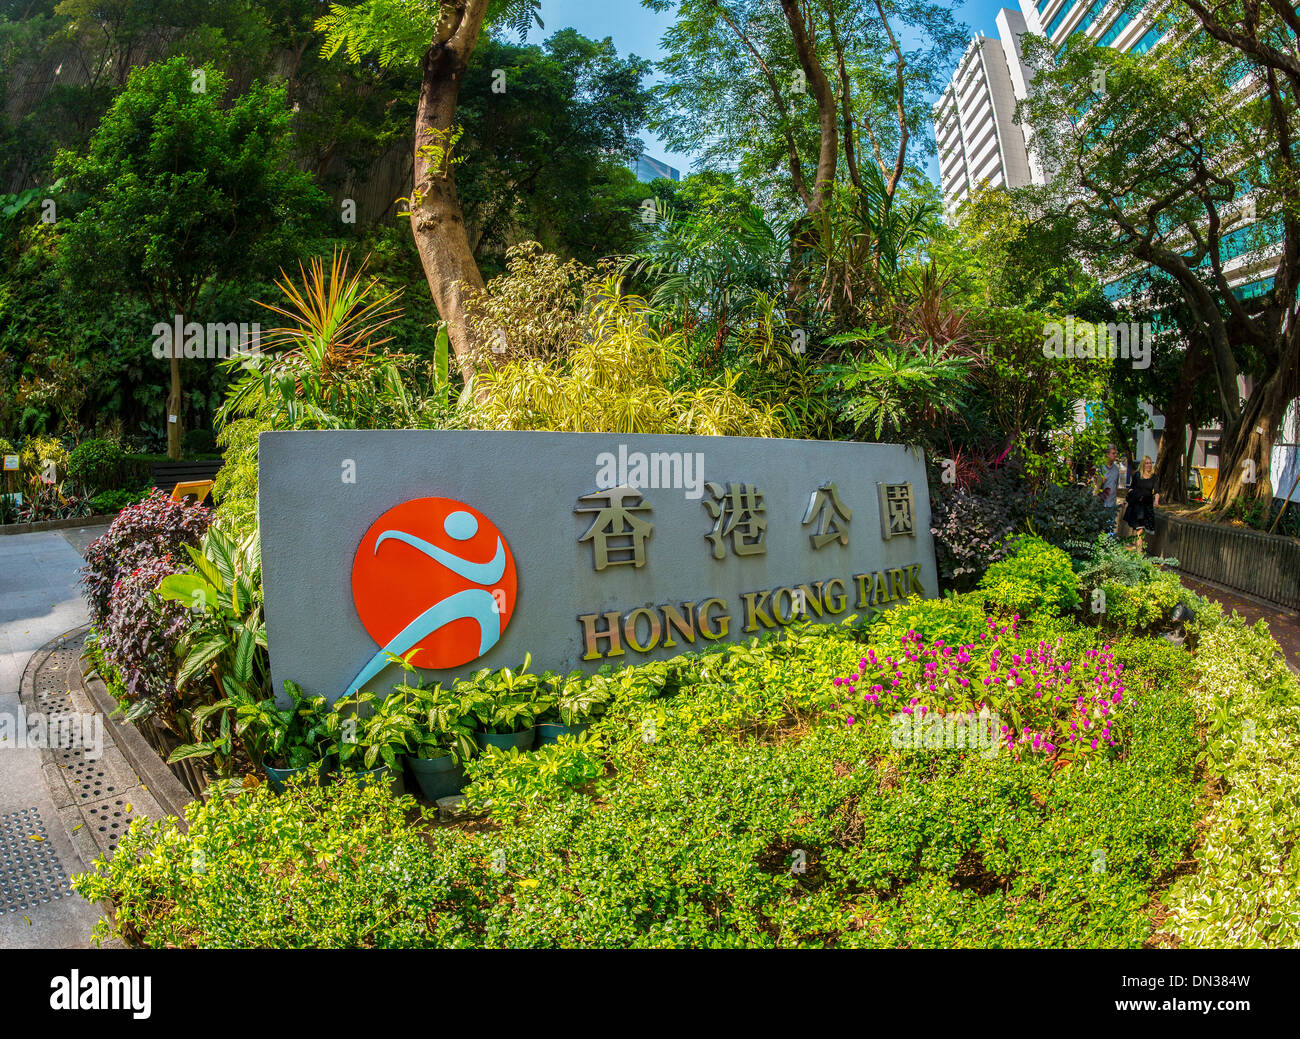 Hong Kong Park Stock Photo